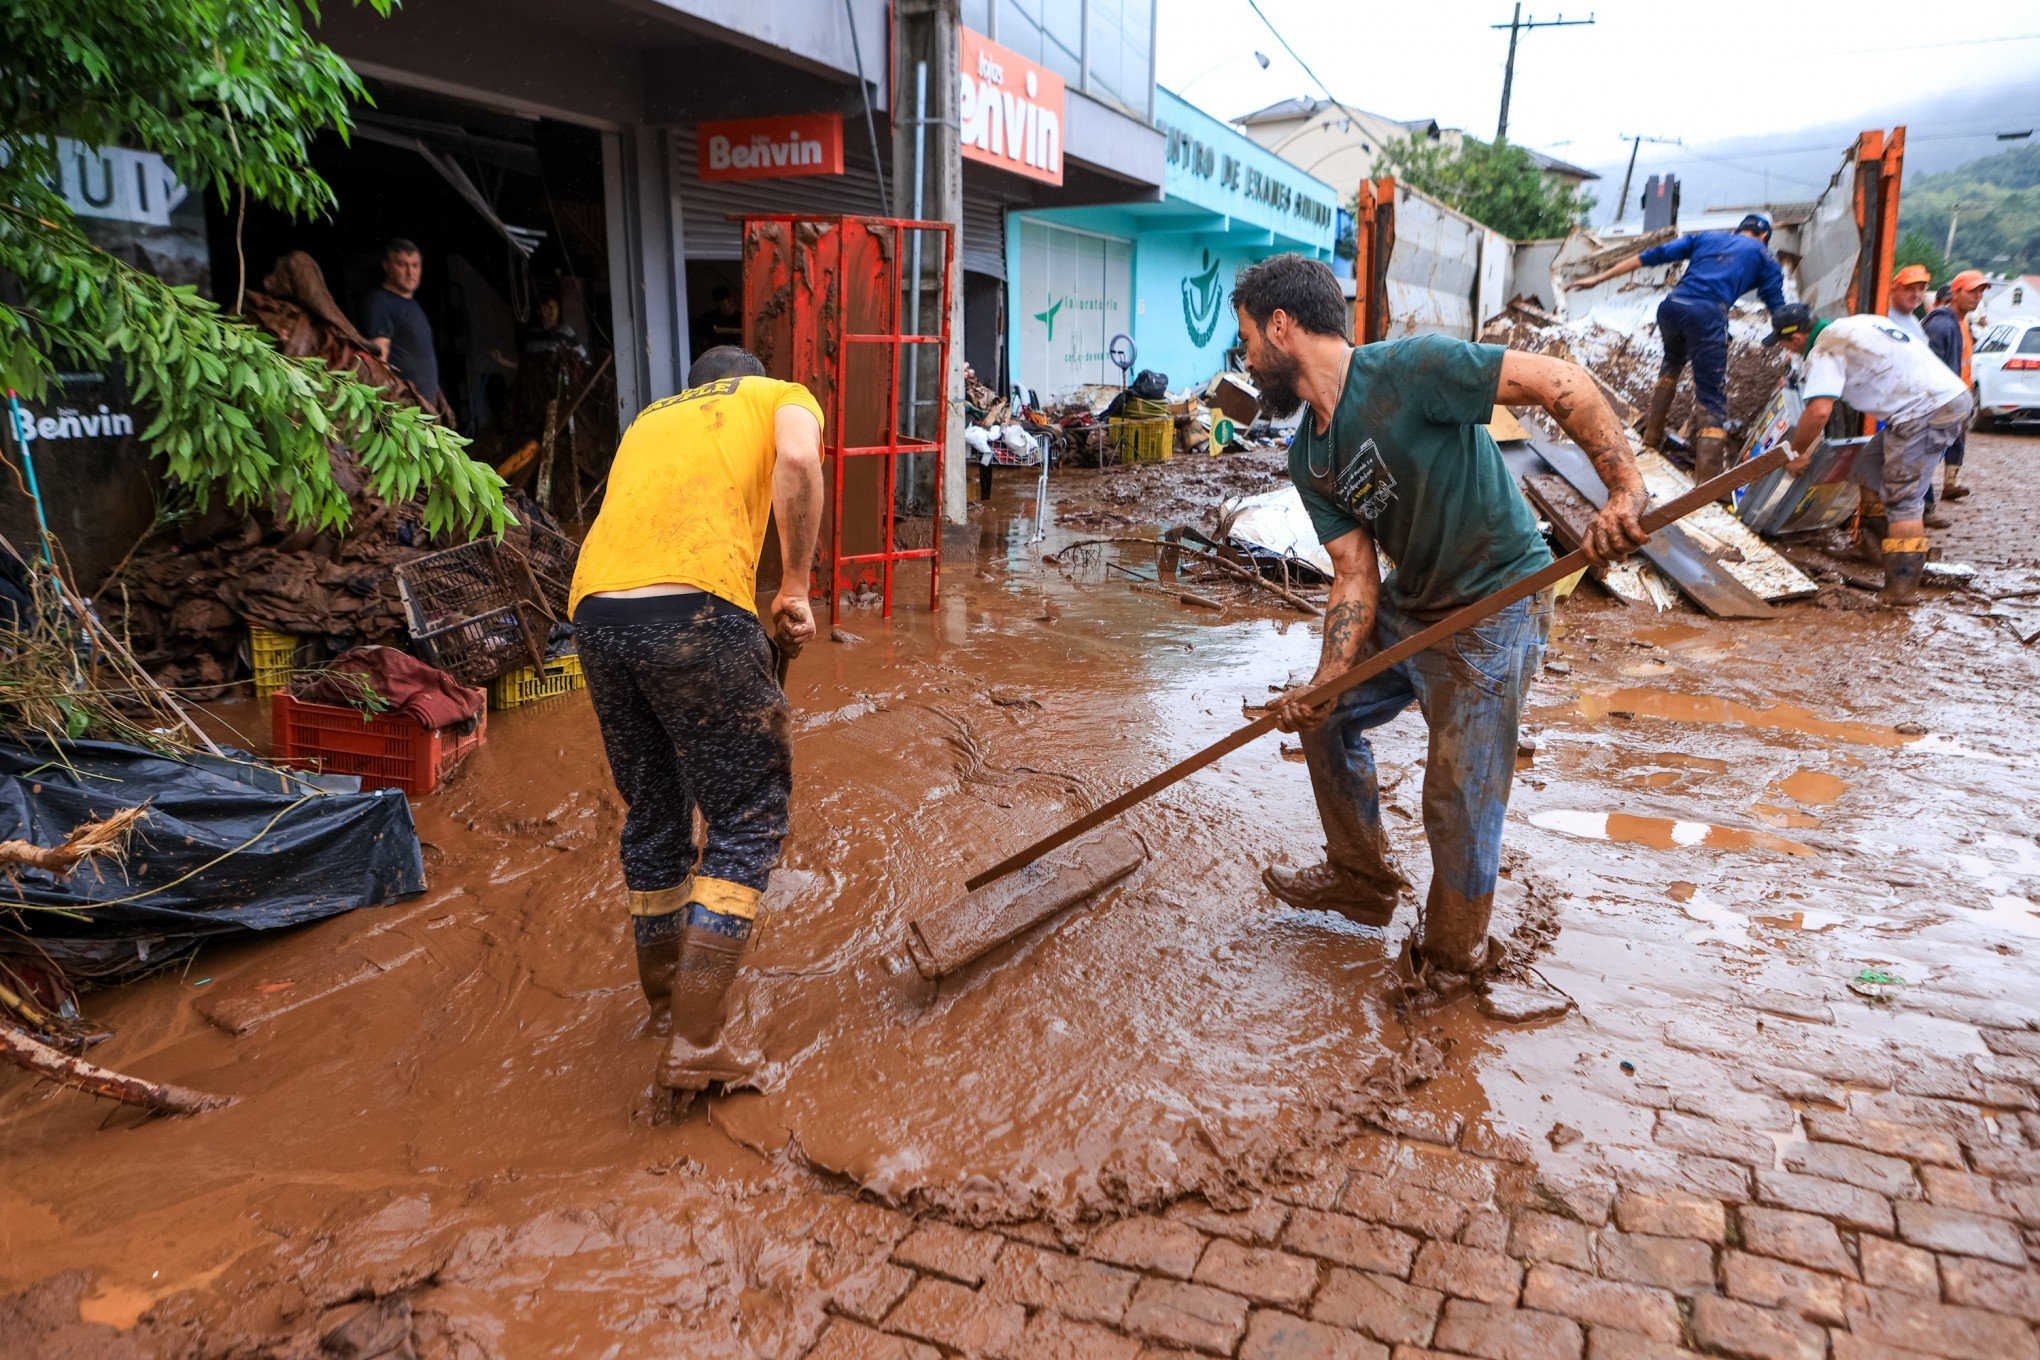 Sebrae lança programa para ajudar empresas atingidas pela enchente no Rio Grande do Sul